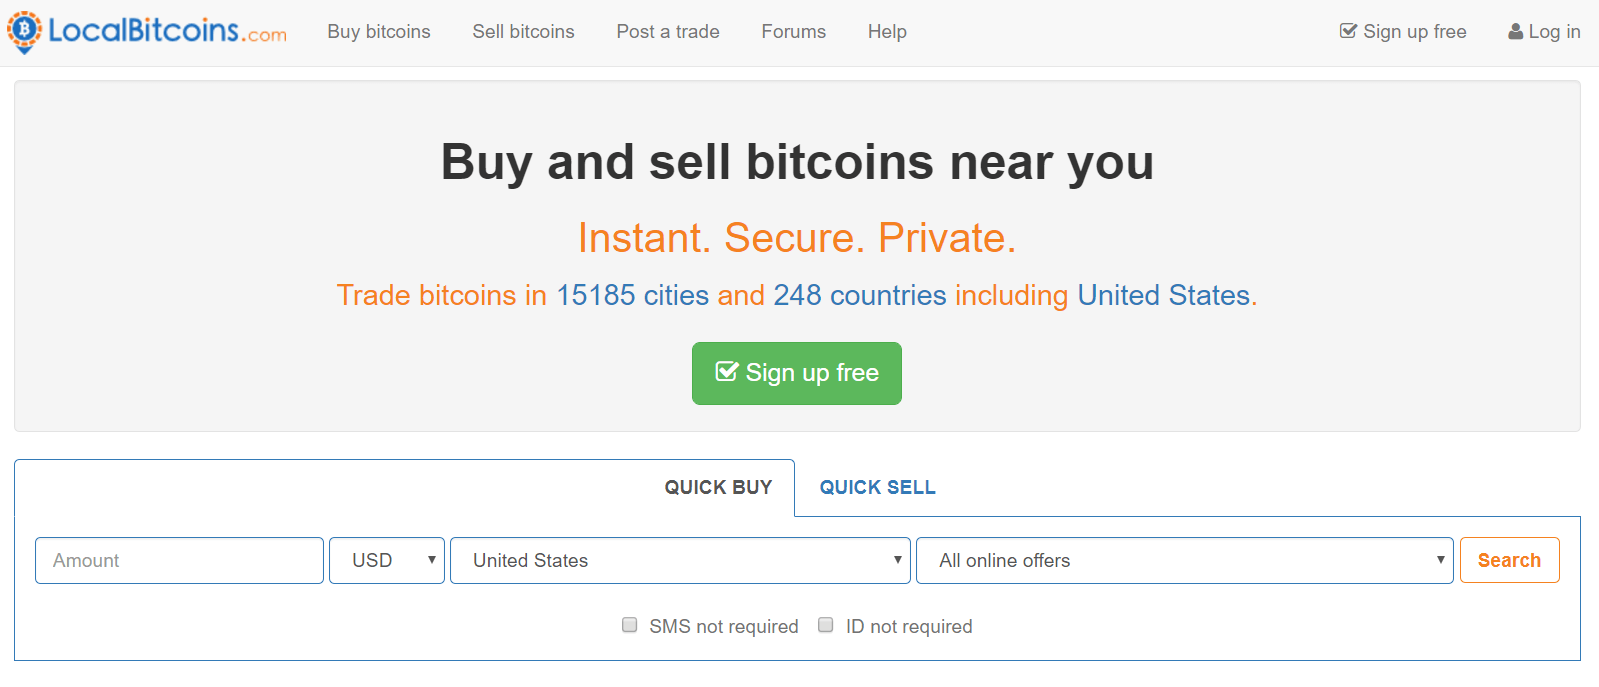 Obtenga bitcoins en el intercambiador de LocalBitcoins